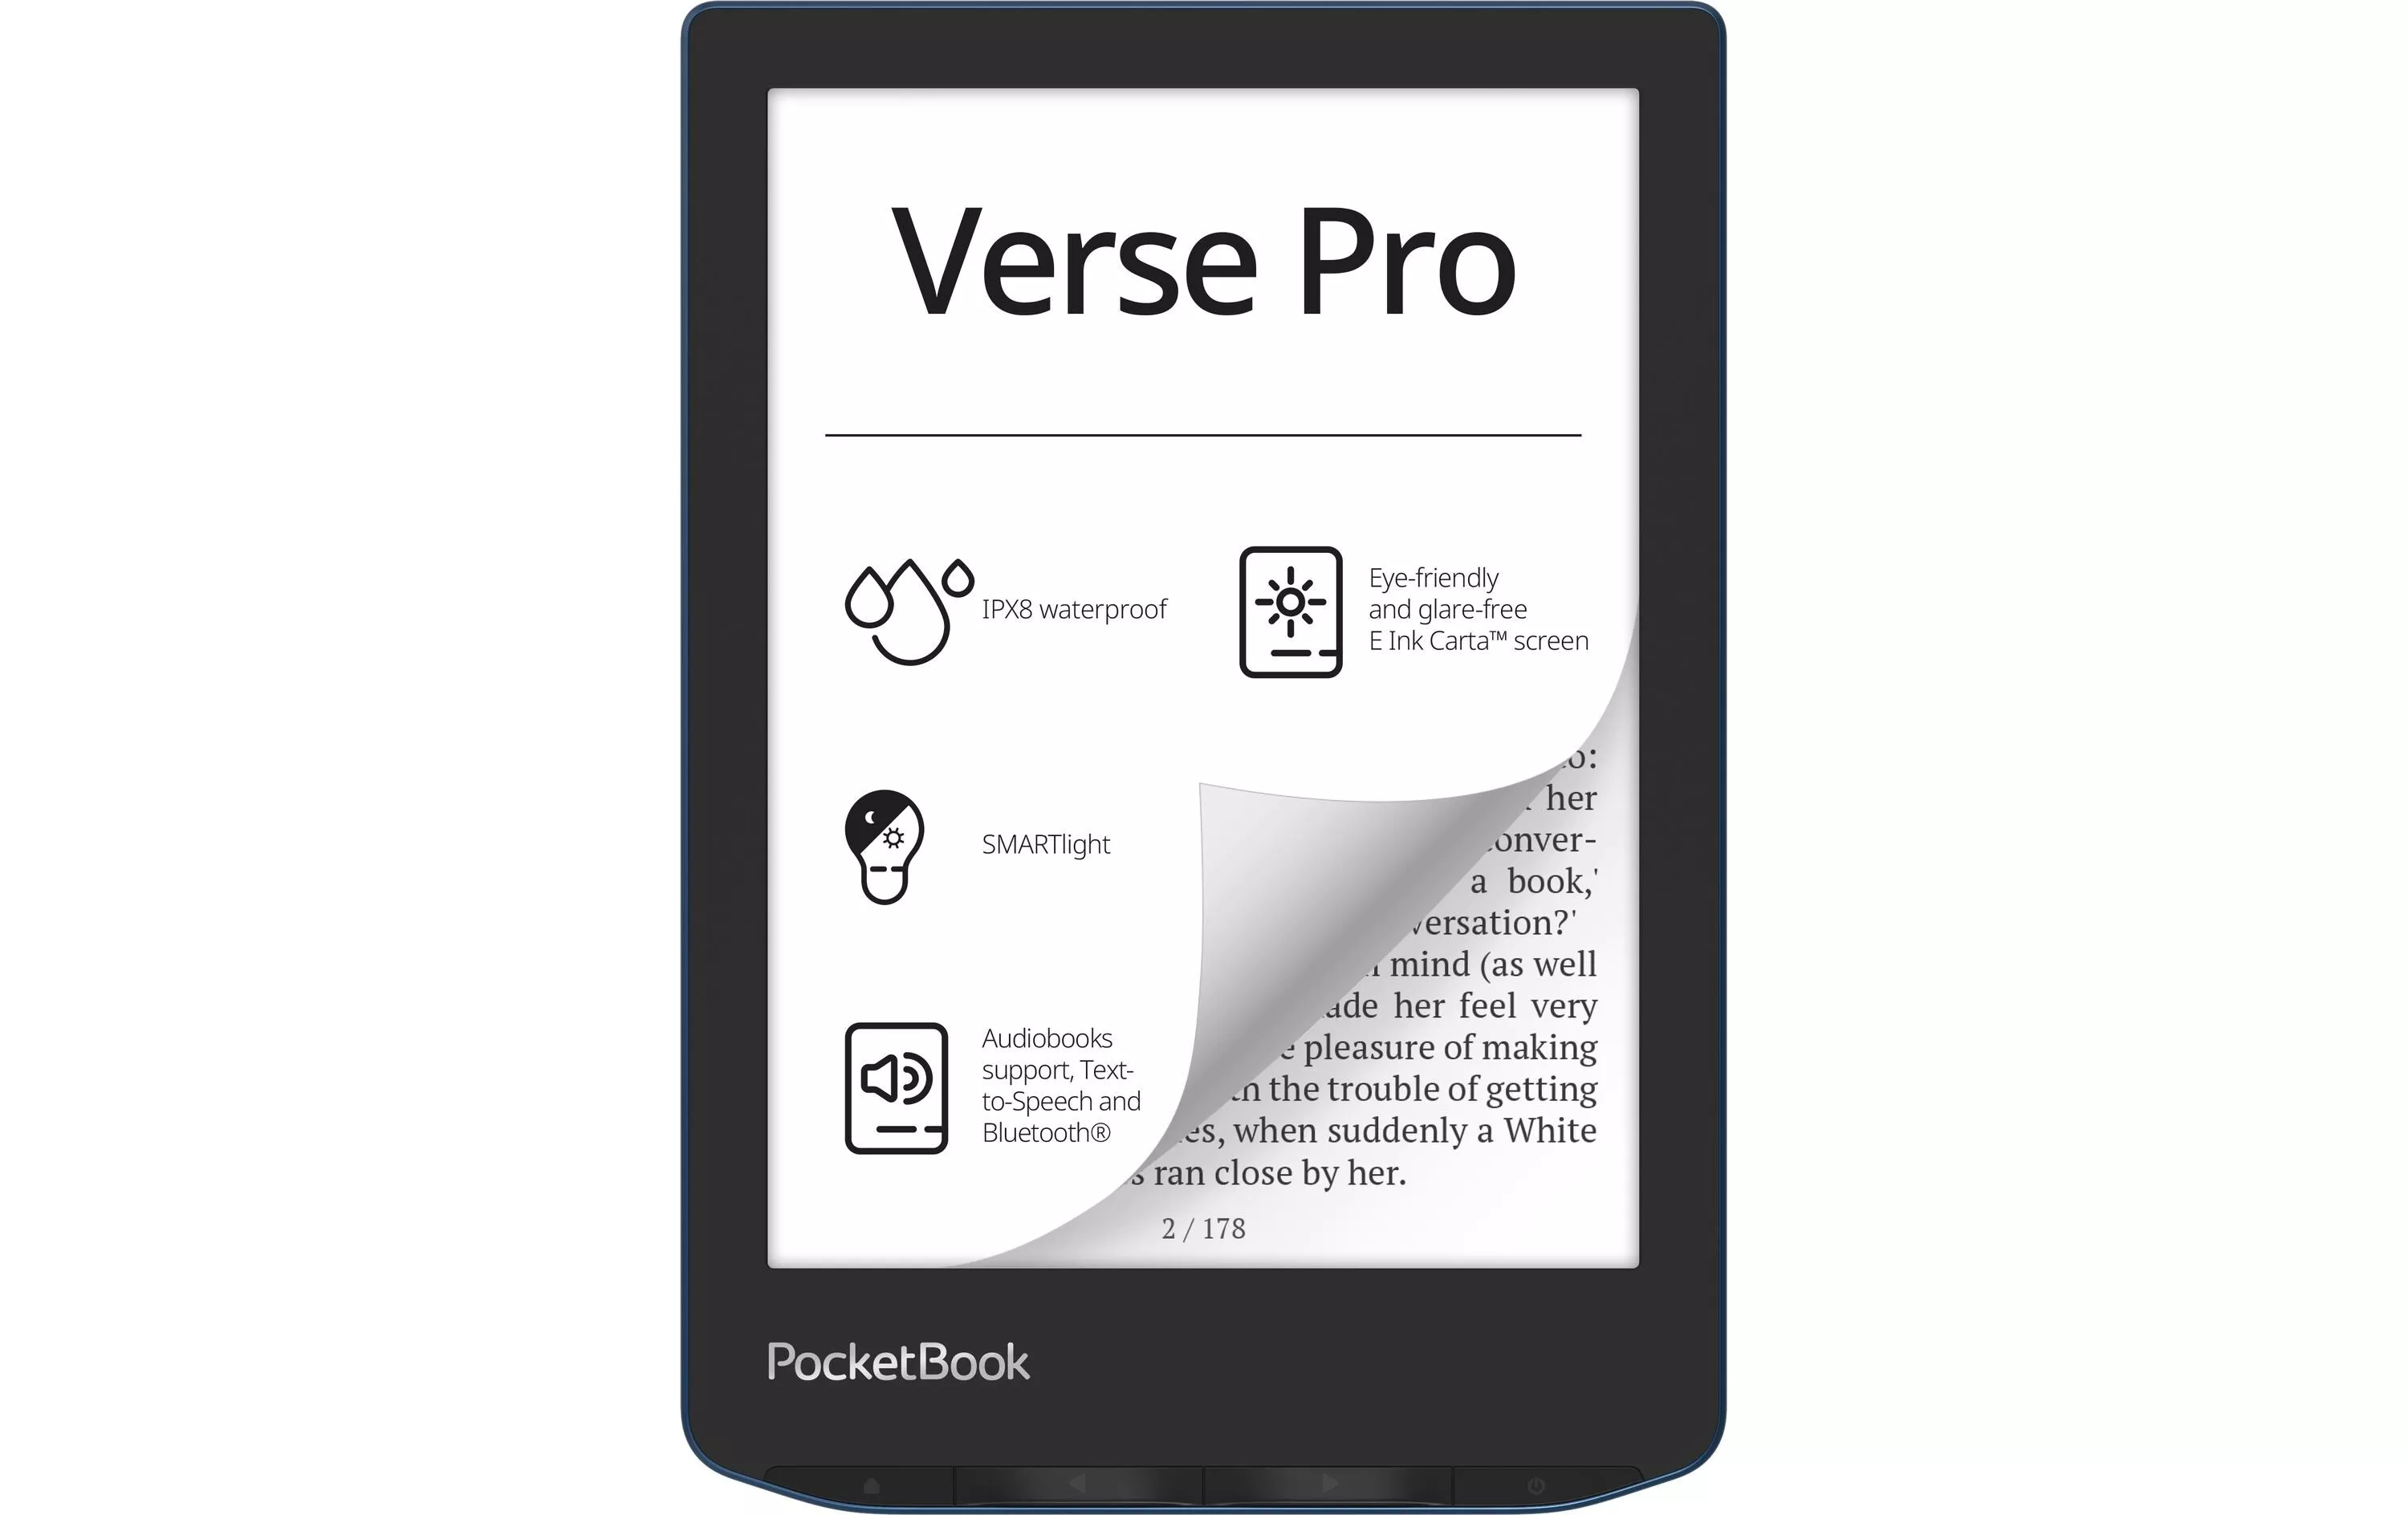 Lettore di libri elettronici PocketBook Verse Pro Azure